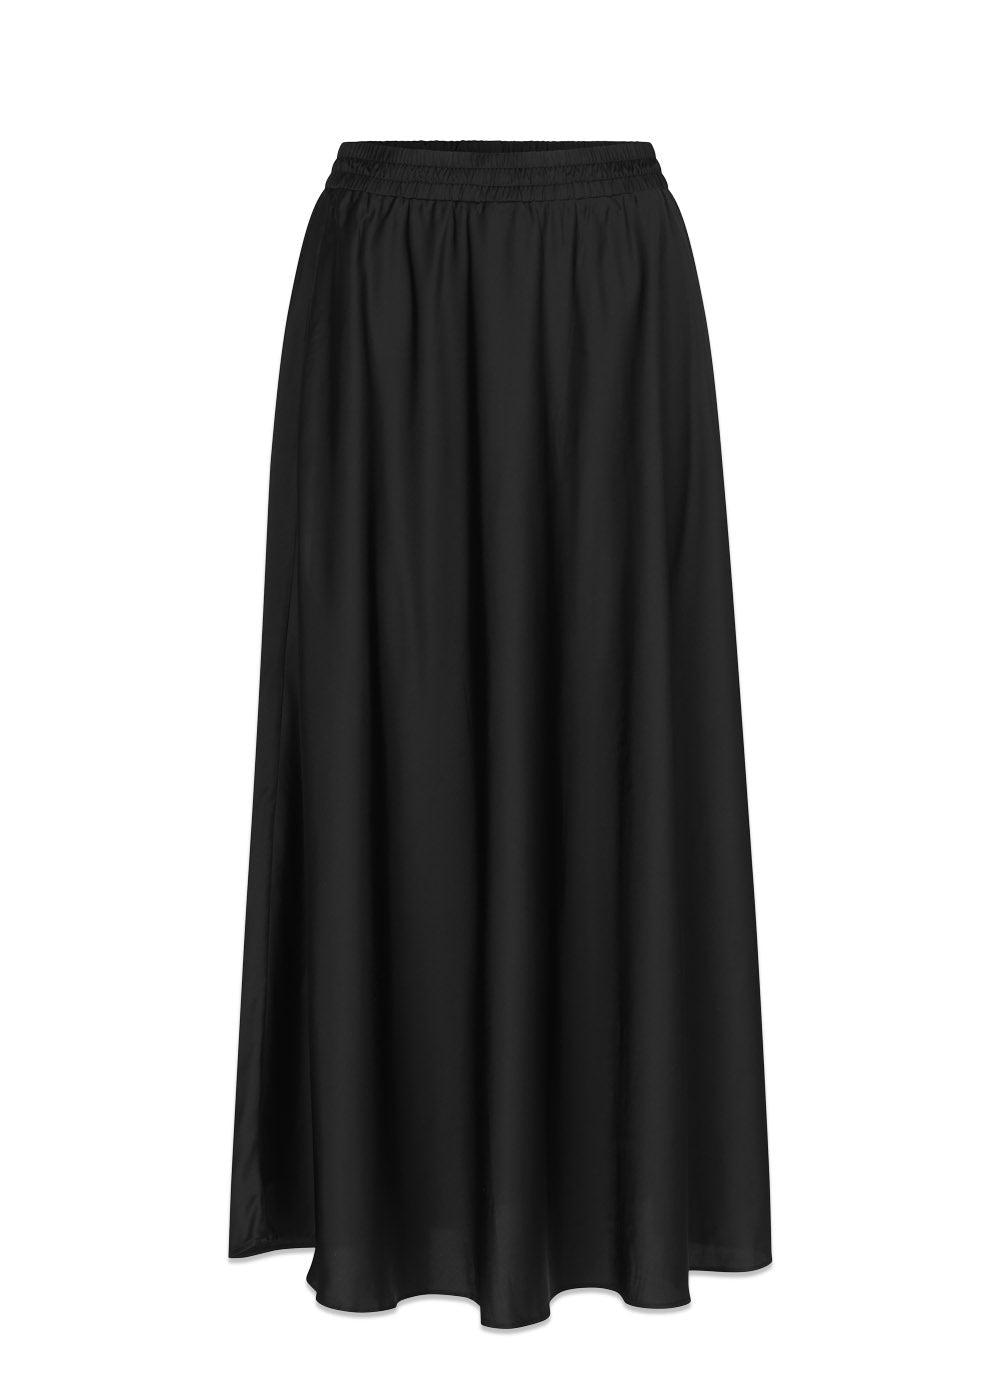 Modströms ReignMD skirt - Black. Køb skirts her.